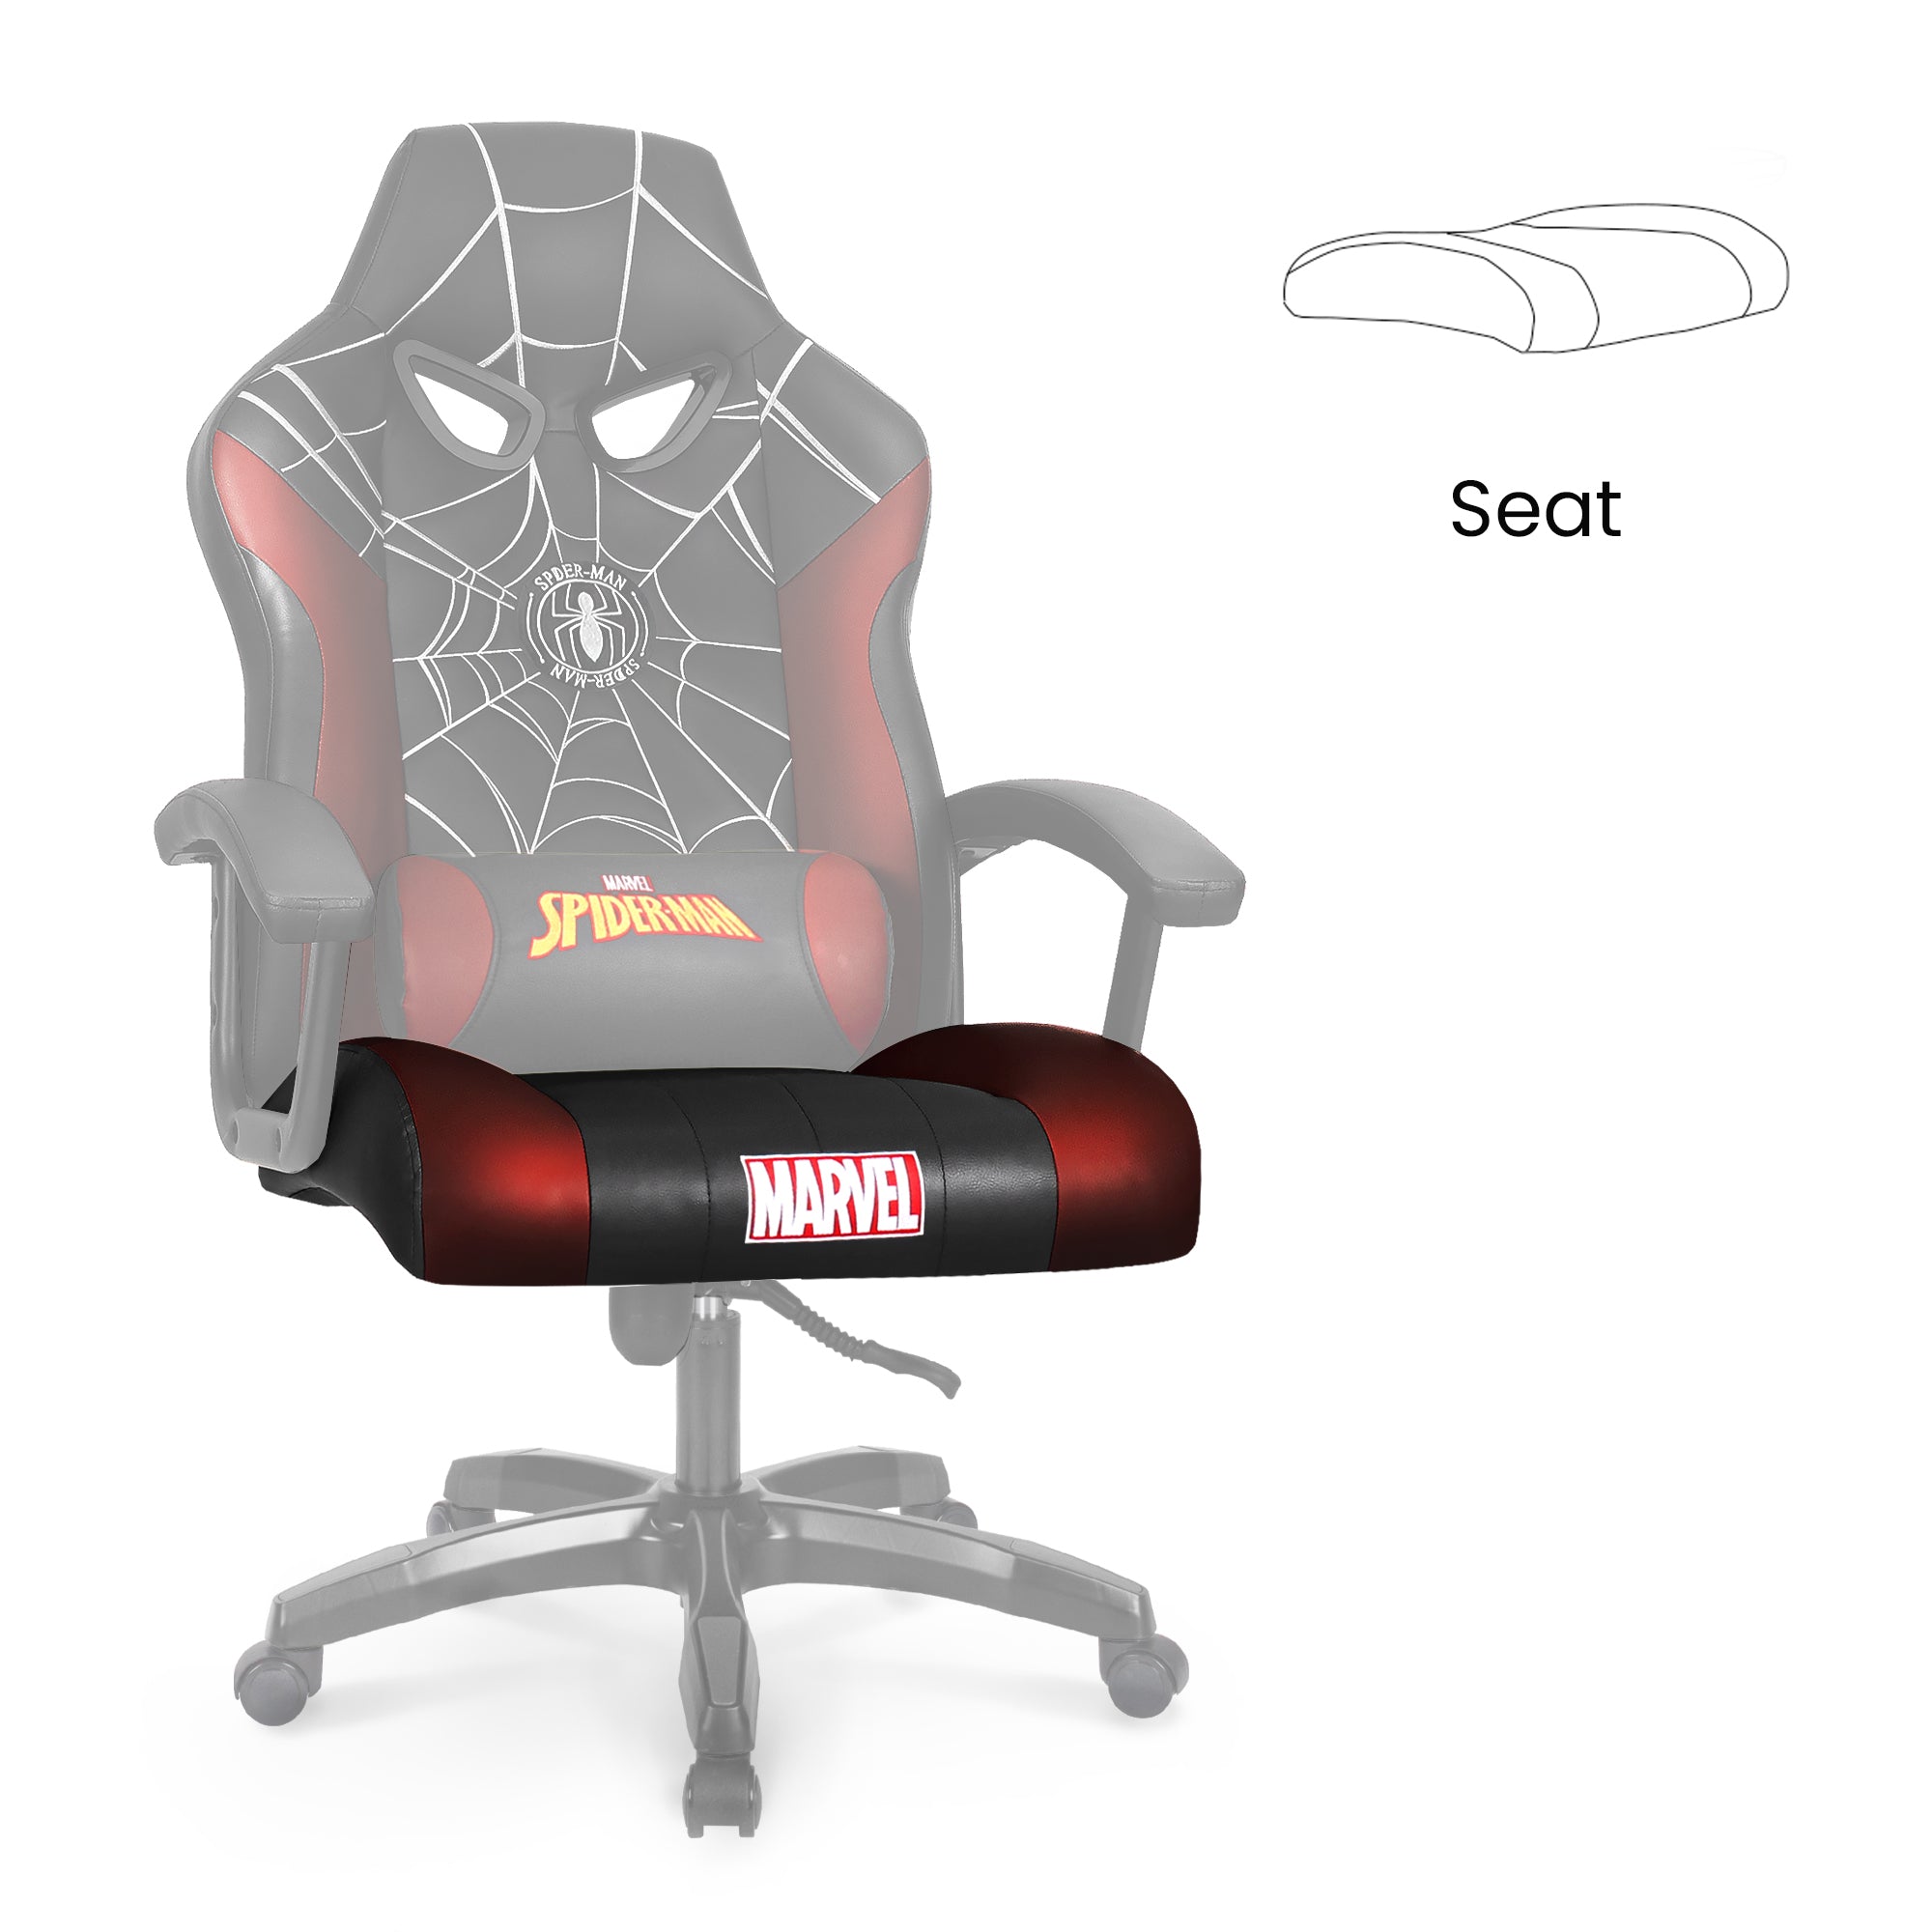 [part] CRC Seat